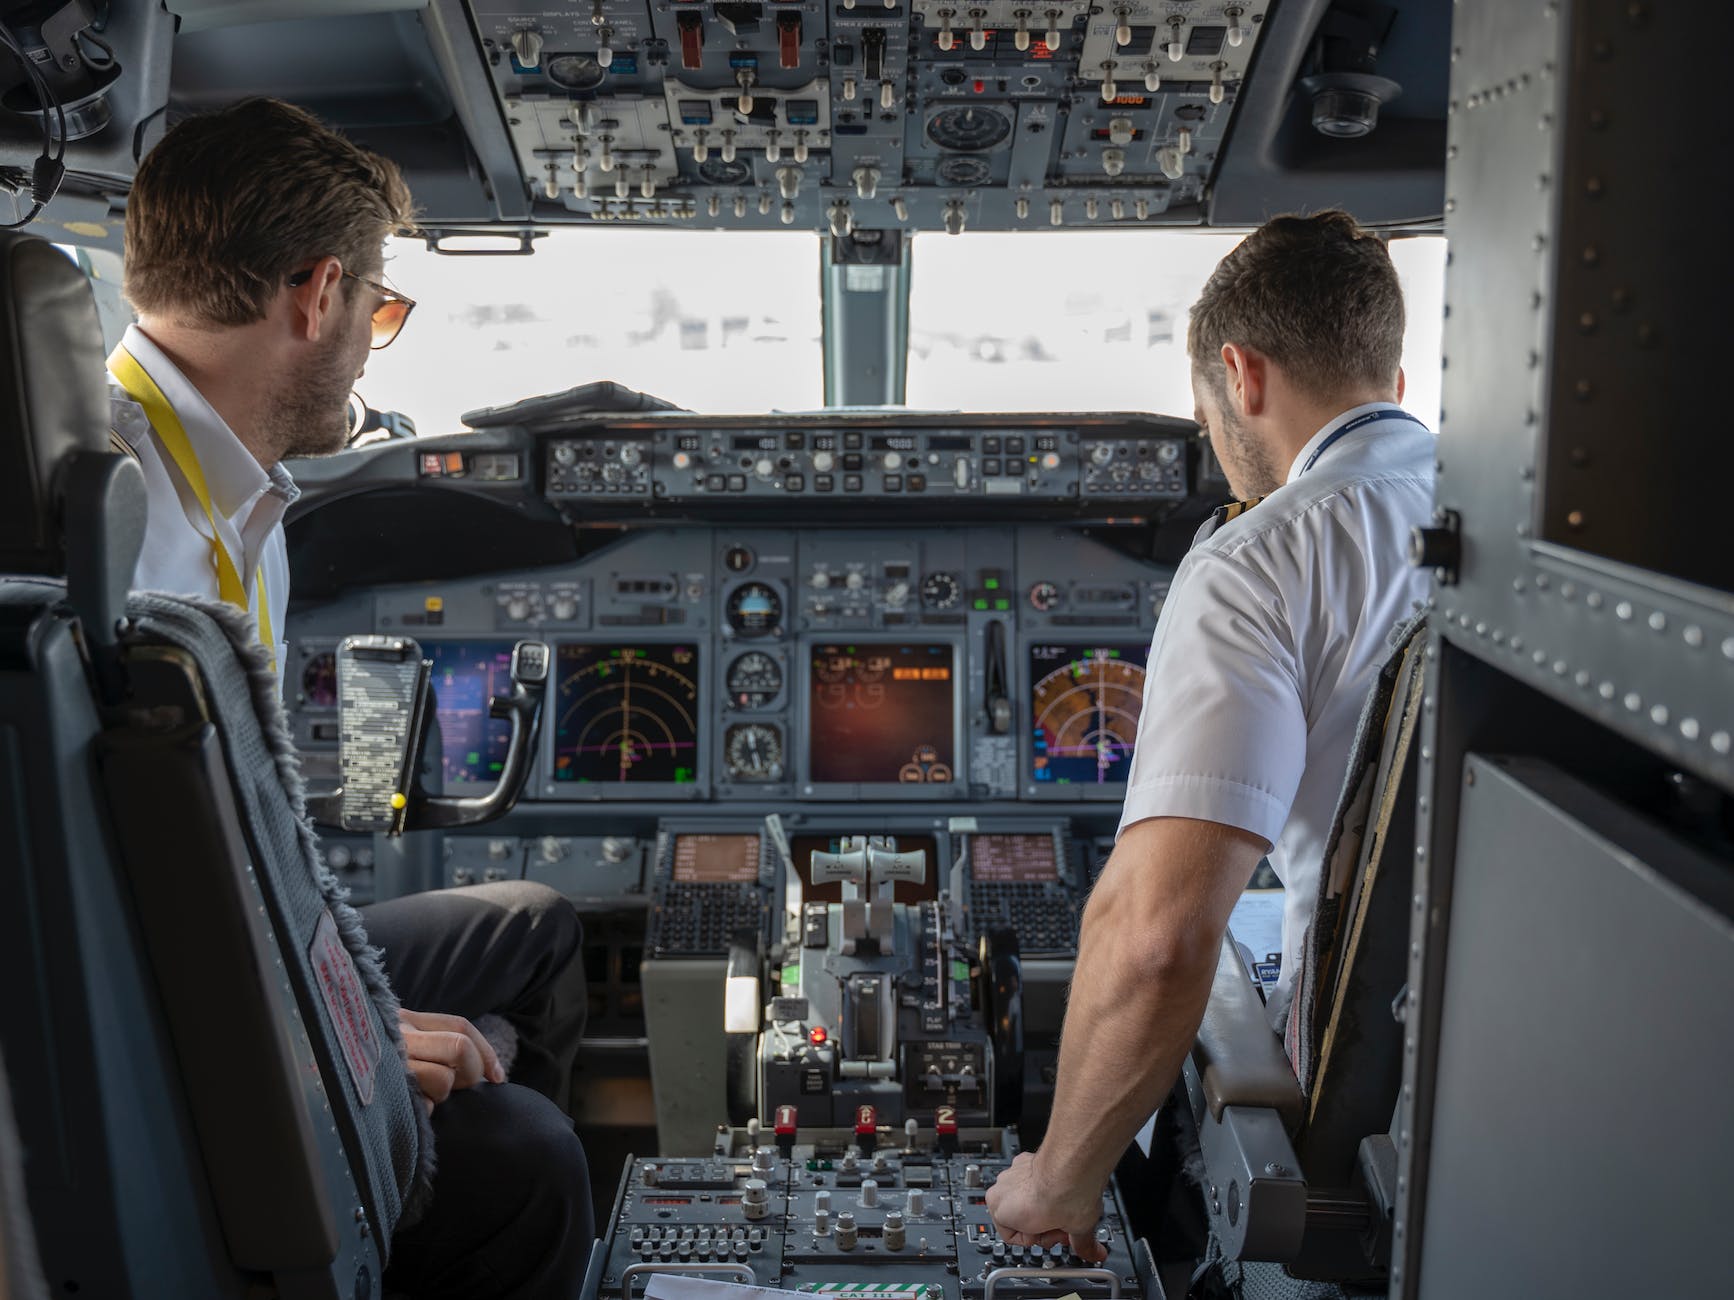 faktor kecelakaan pesawat bisa disebabkan kesalahan pilot